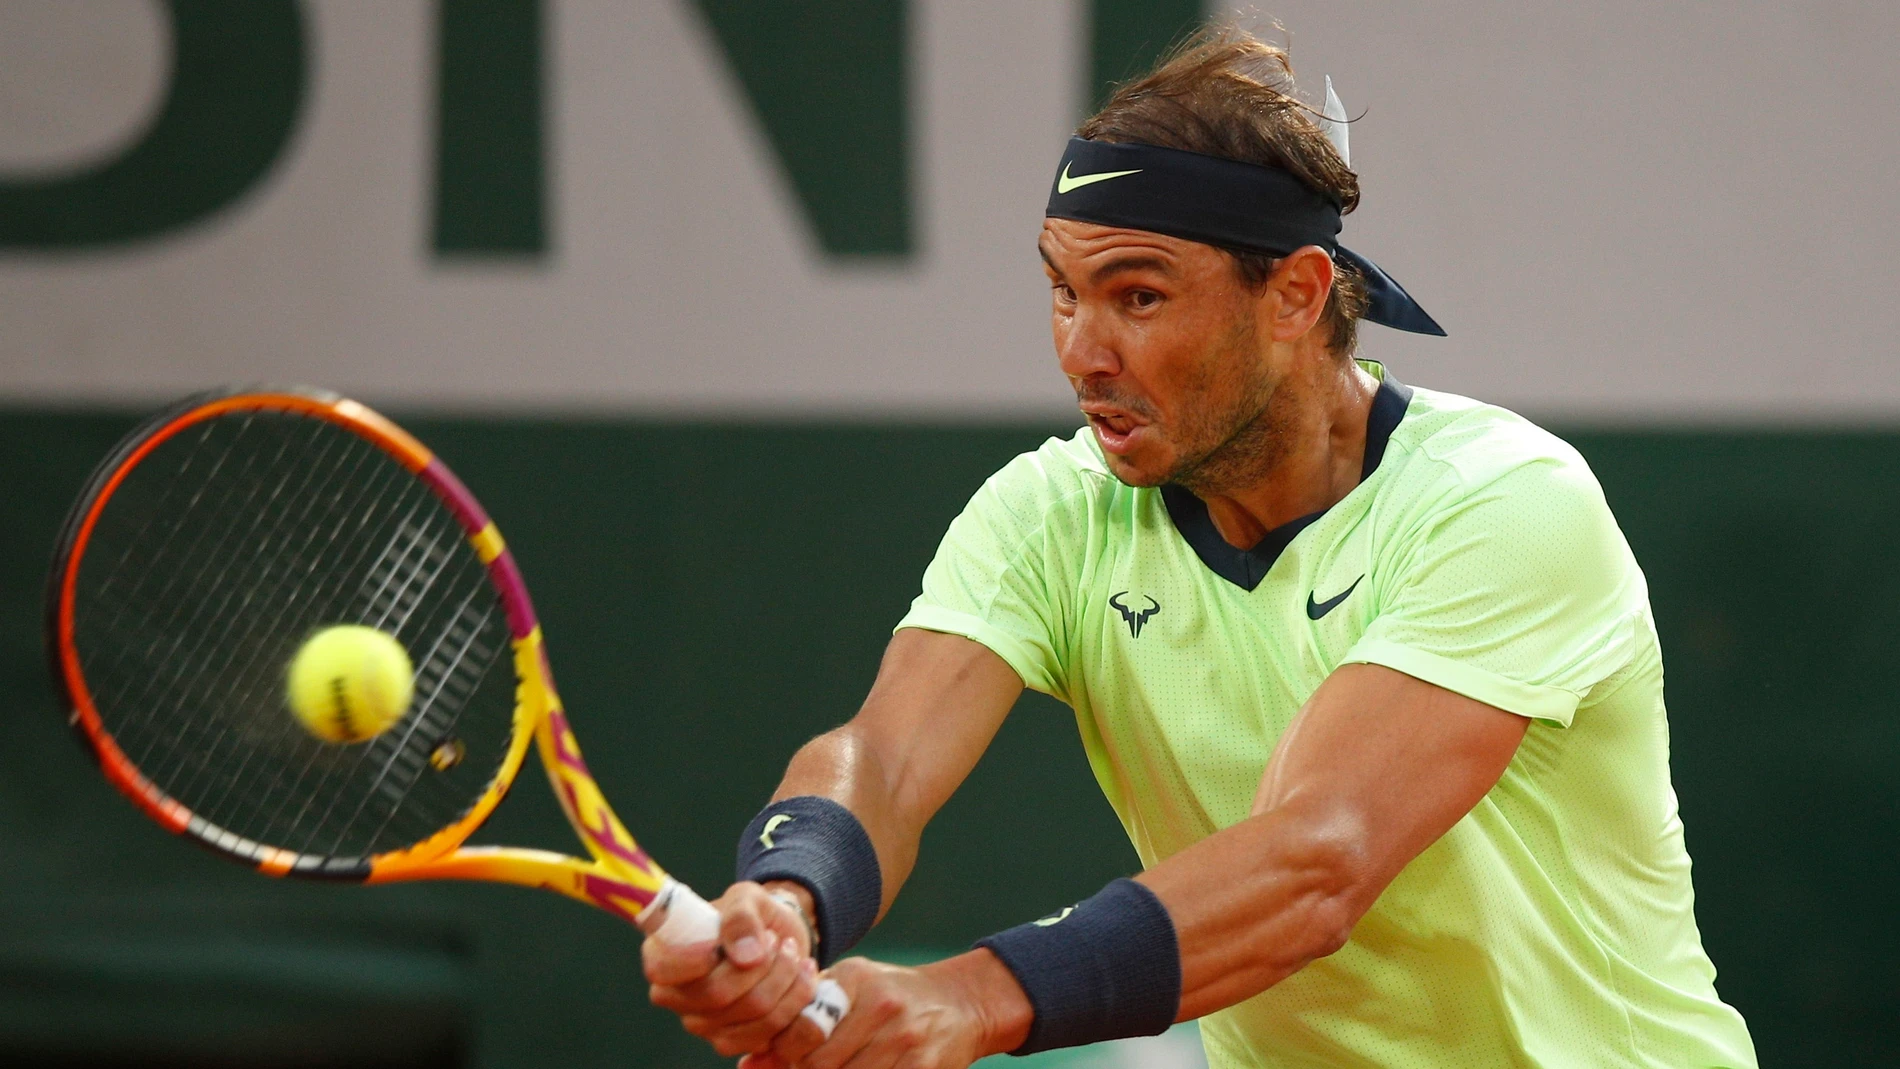 Rafa Nadal - Jannik Sinner: Horario y dónde ver el partido de tenis en directo de Garros 2021